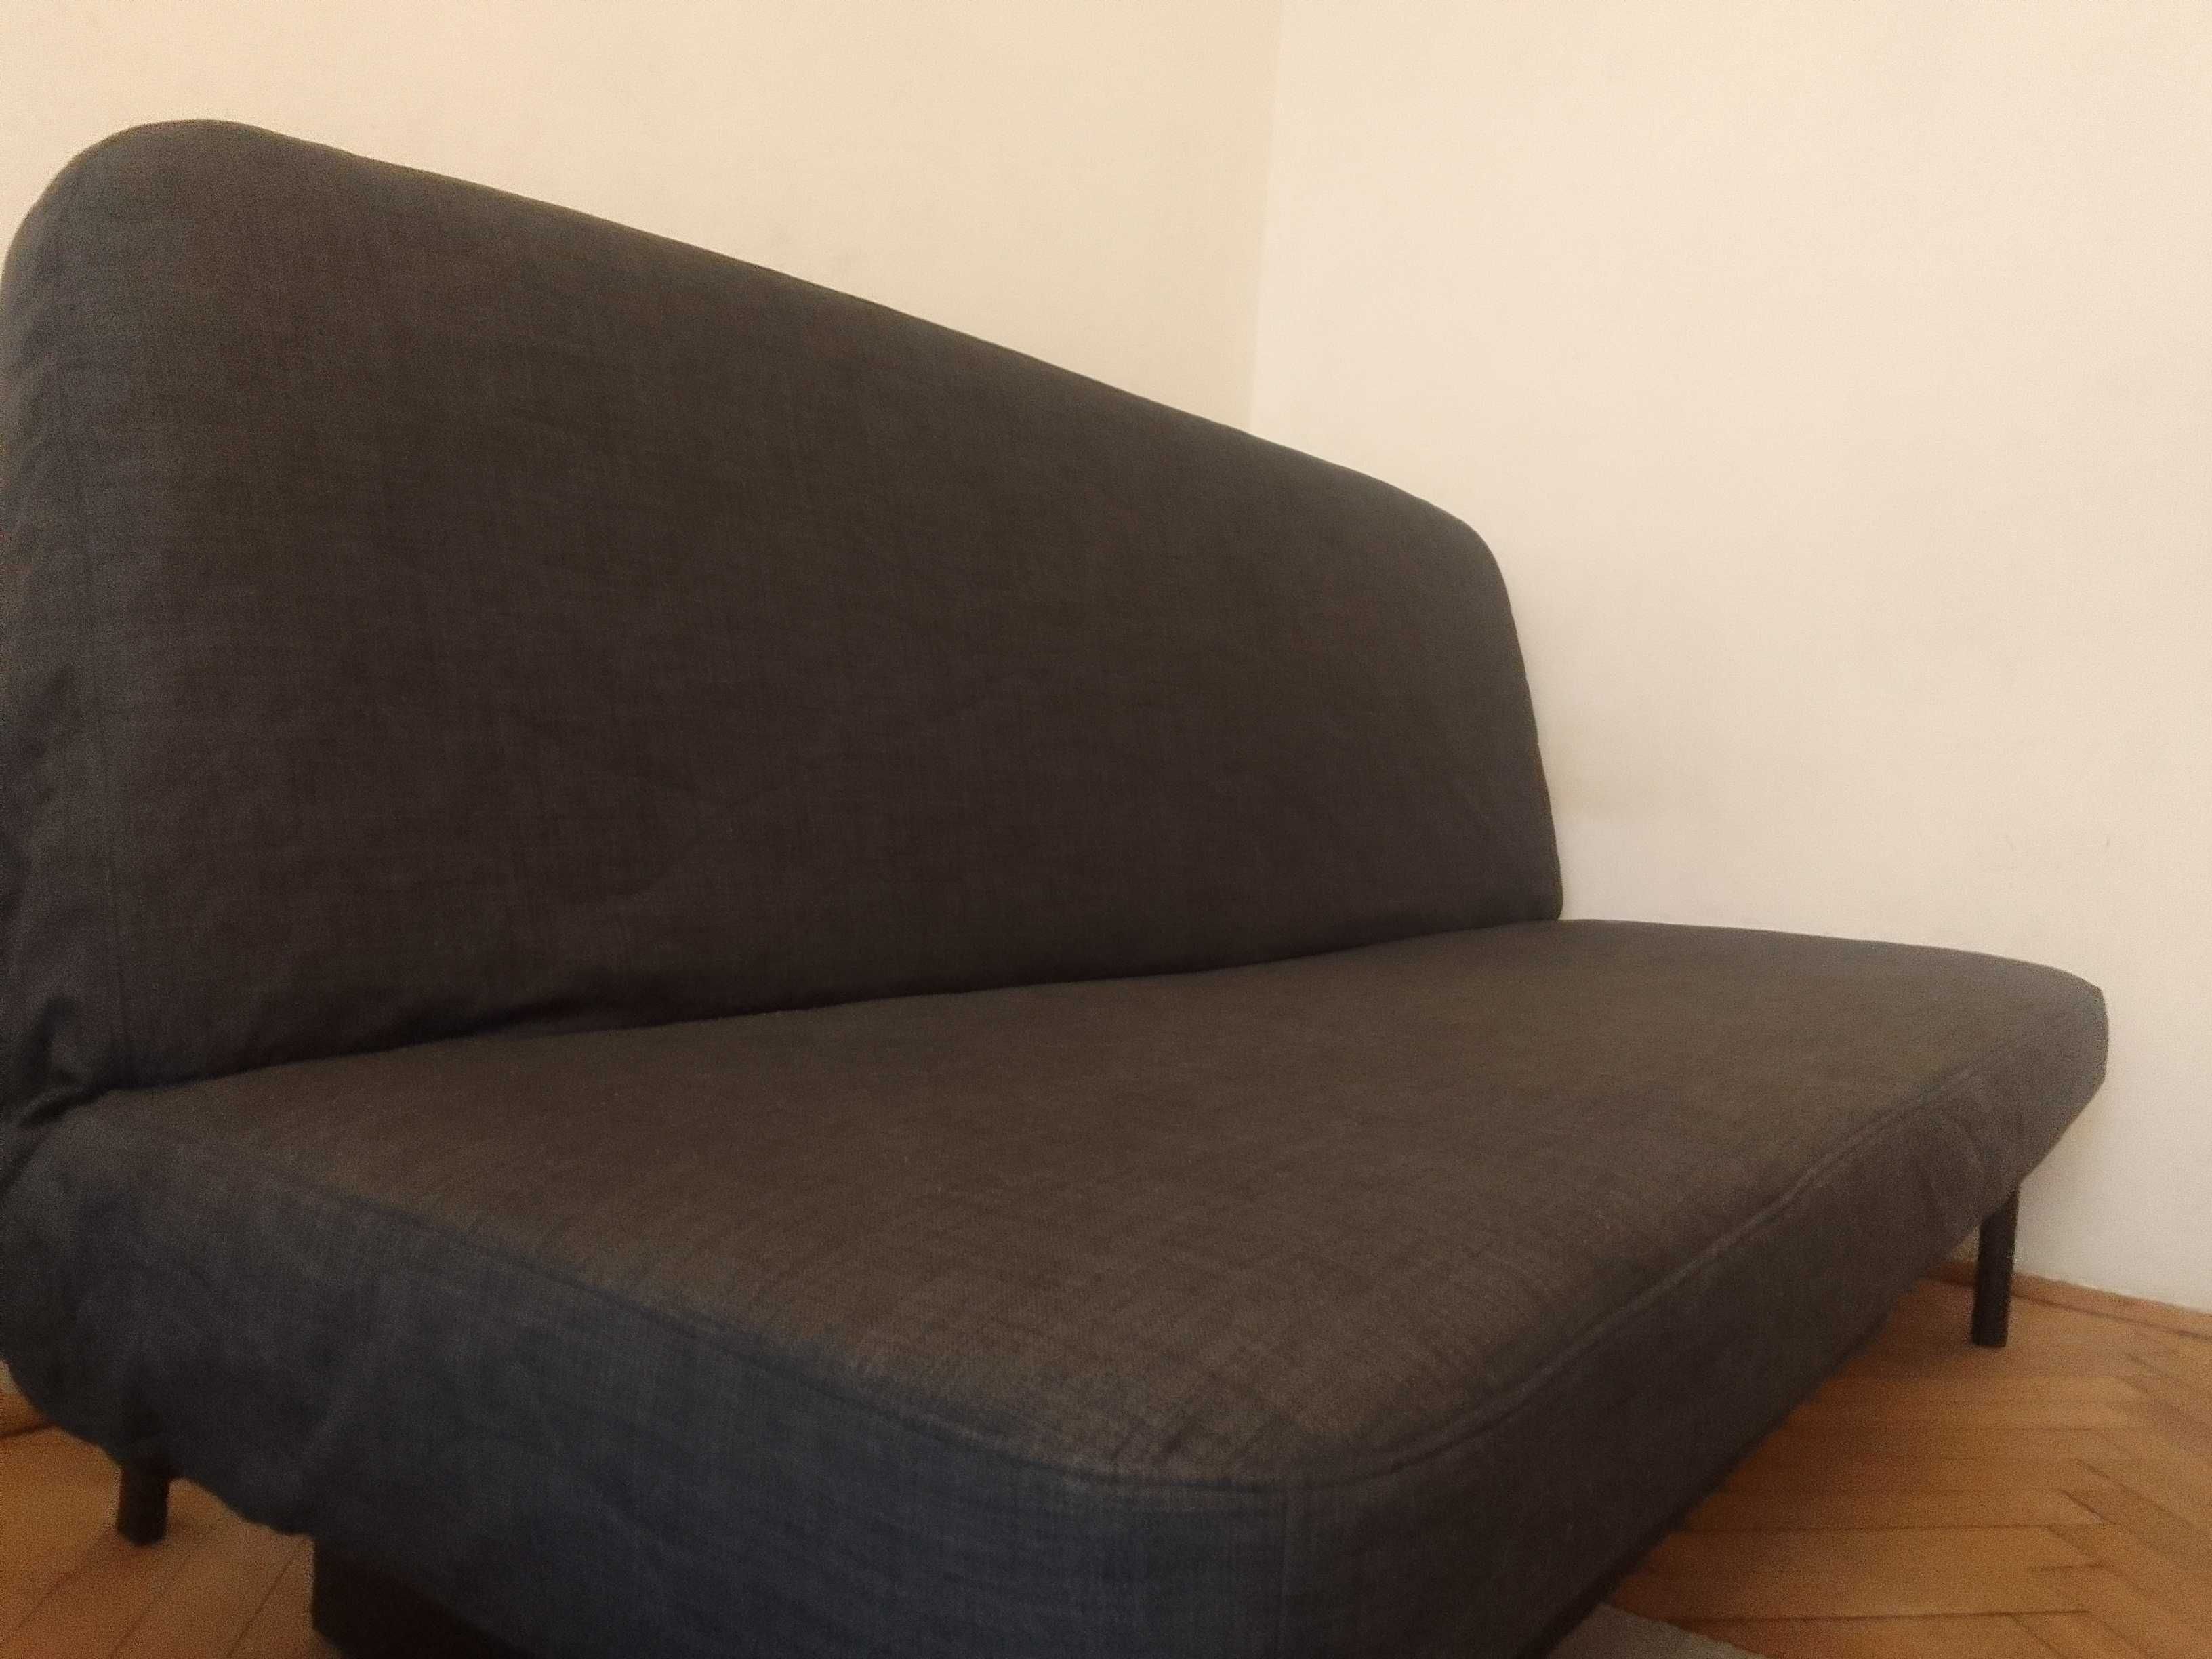 Nyhamn z opcją dowozu, sofa kanapa łóżko IKEA 140/200 materac lateks